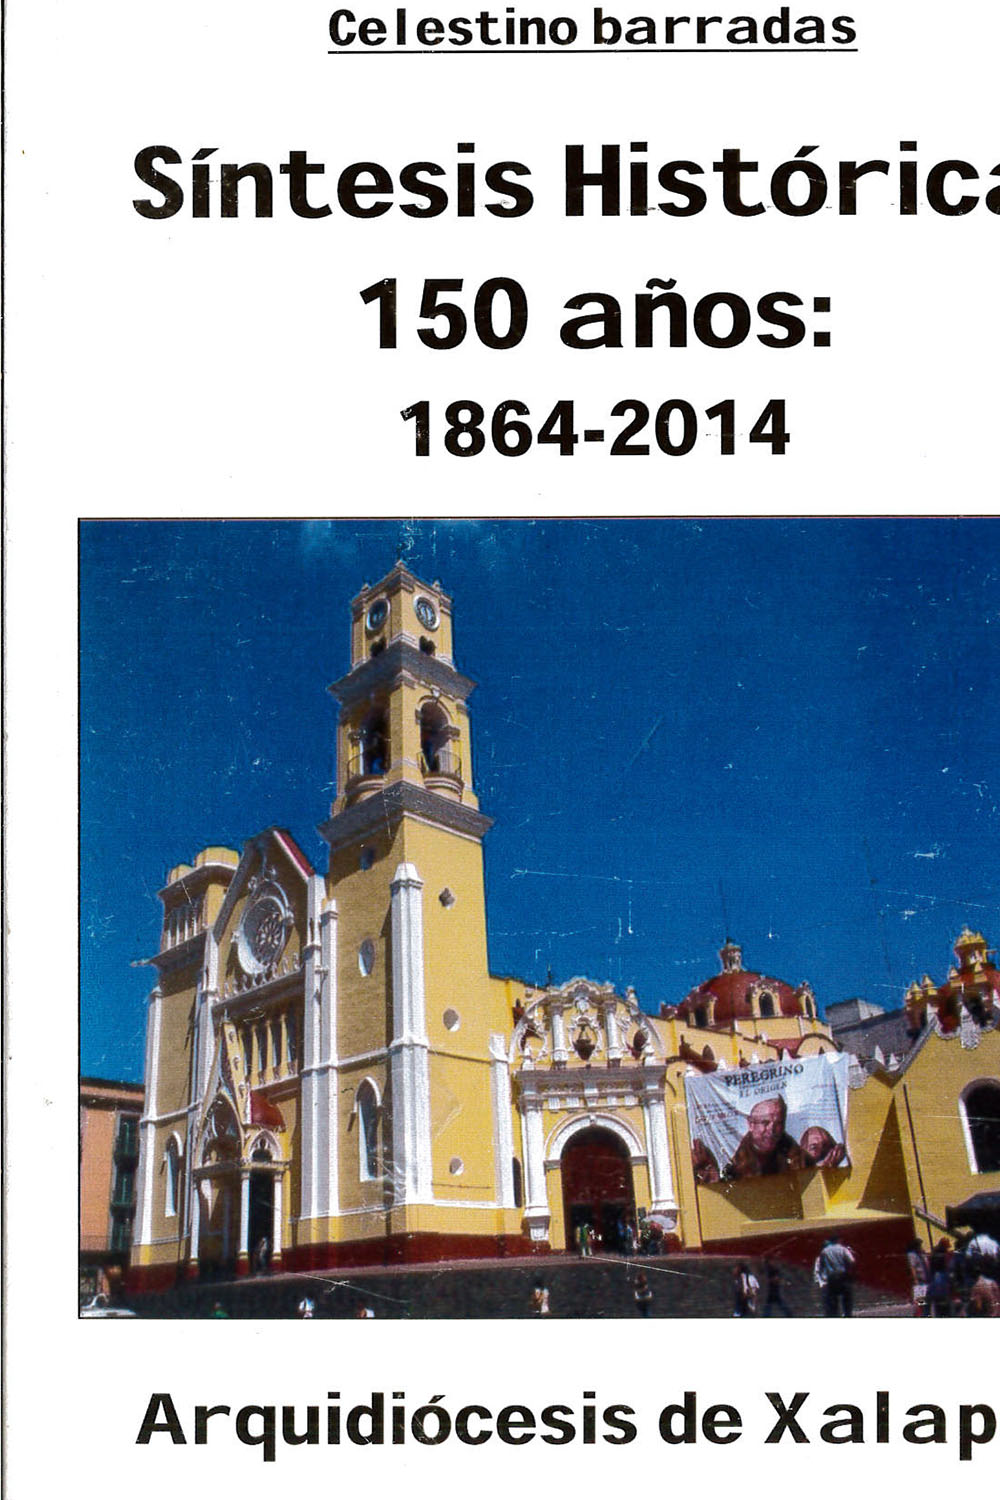 13 / 16 - BX1428,3 B37 Síntesis Histórica 150 años: 1864-2014
Celestino Barradas - Ediciones San José, México 2012